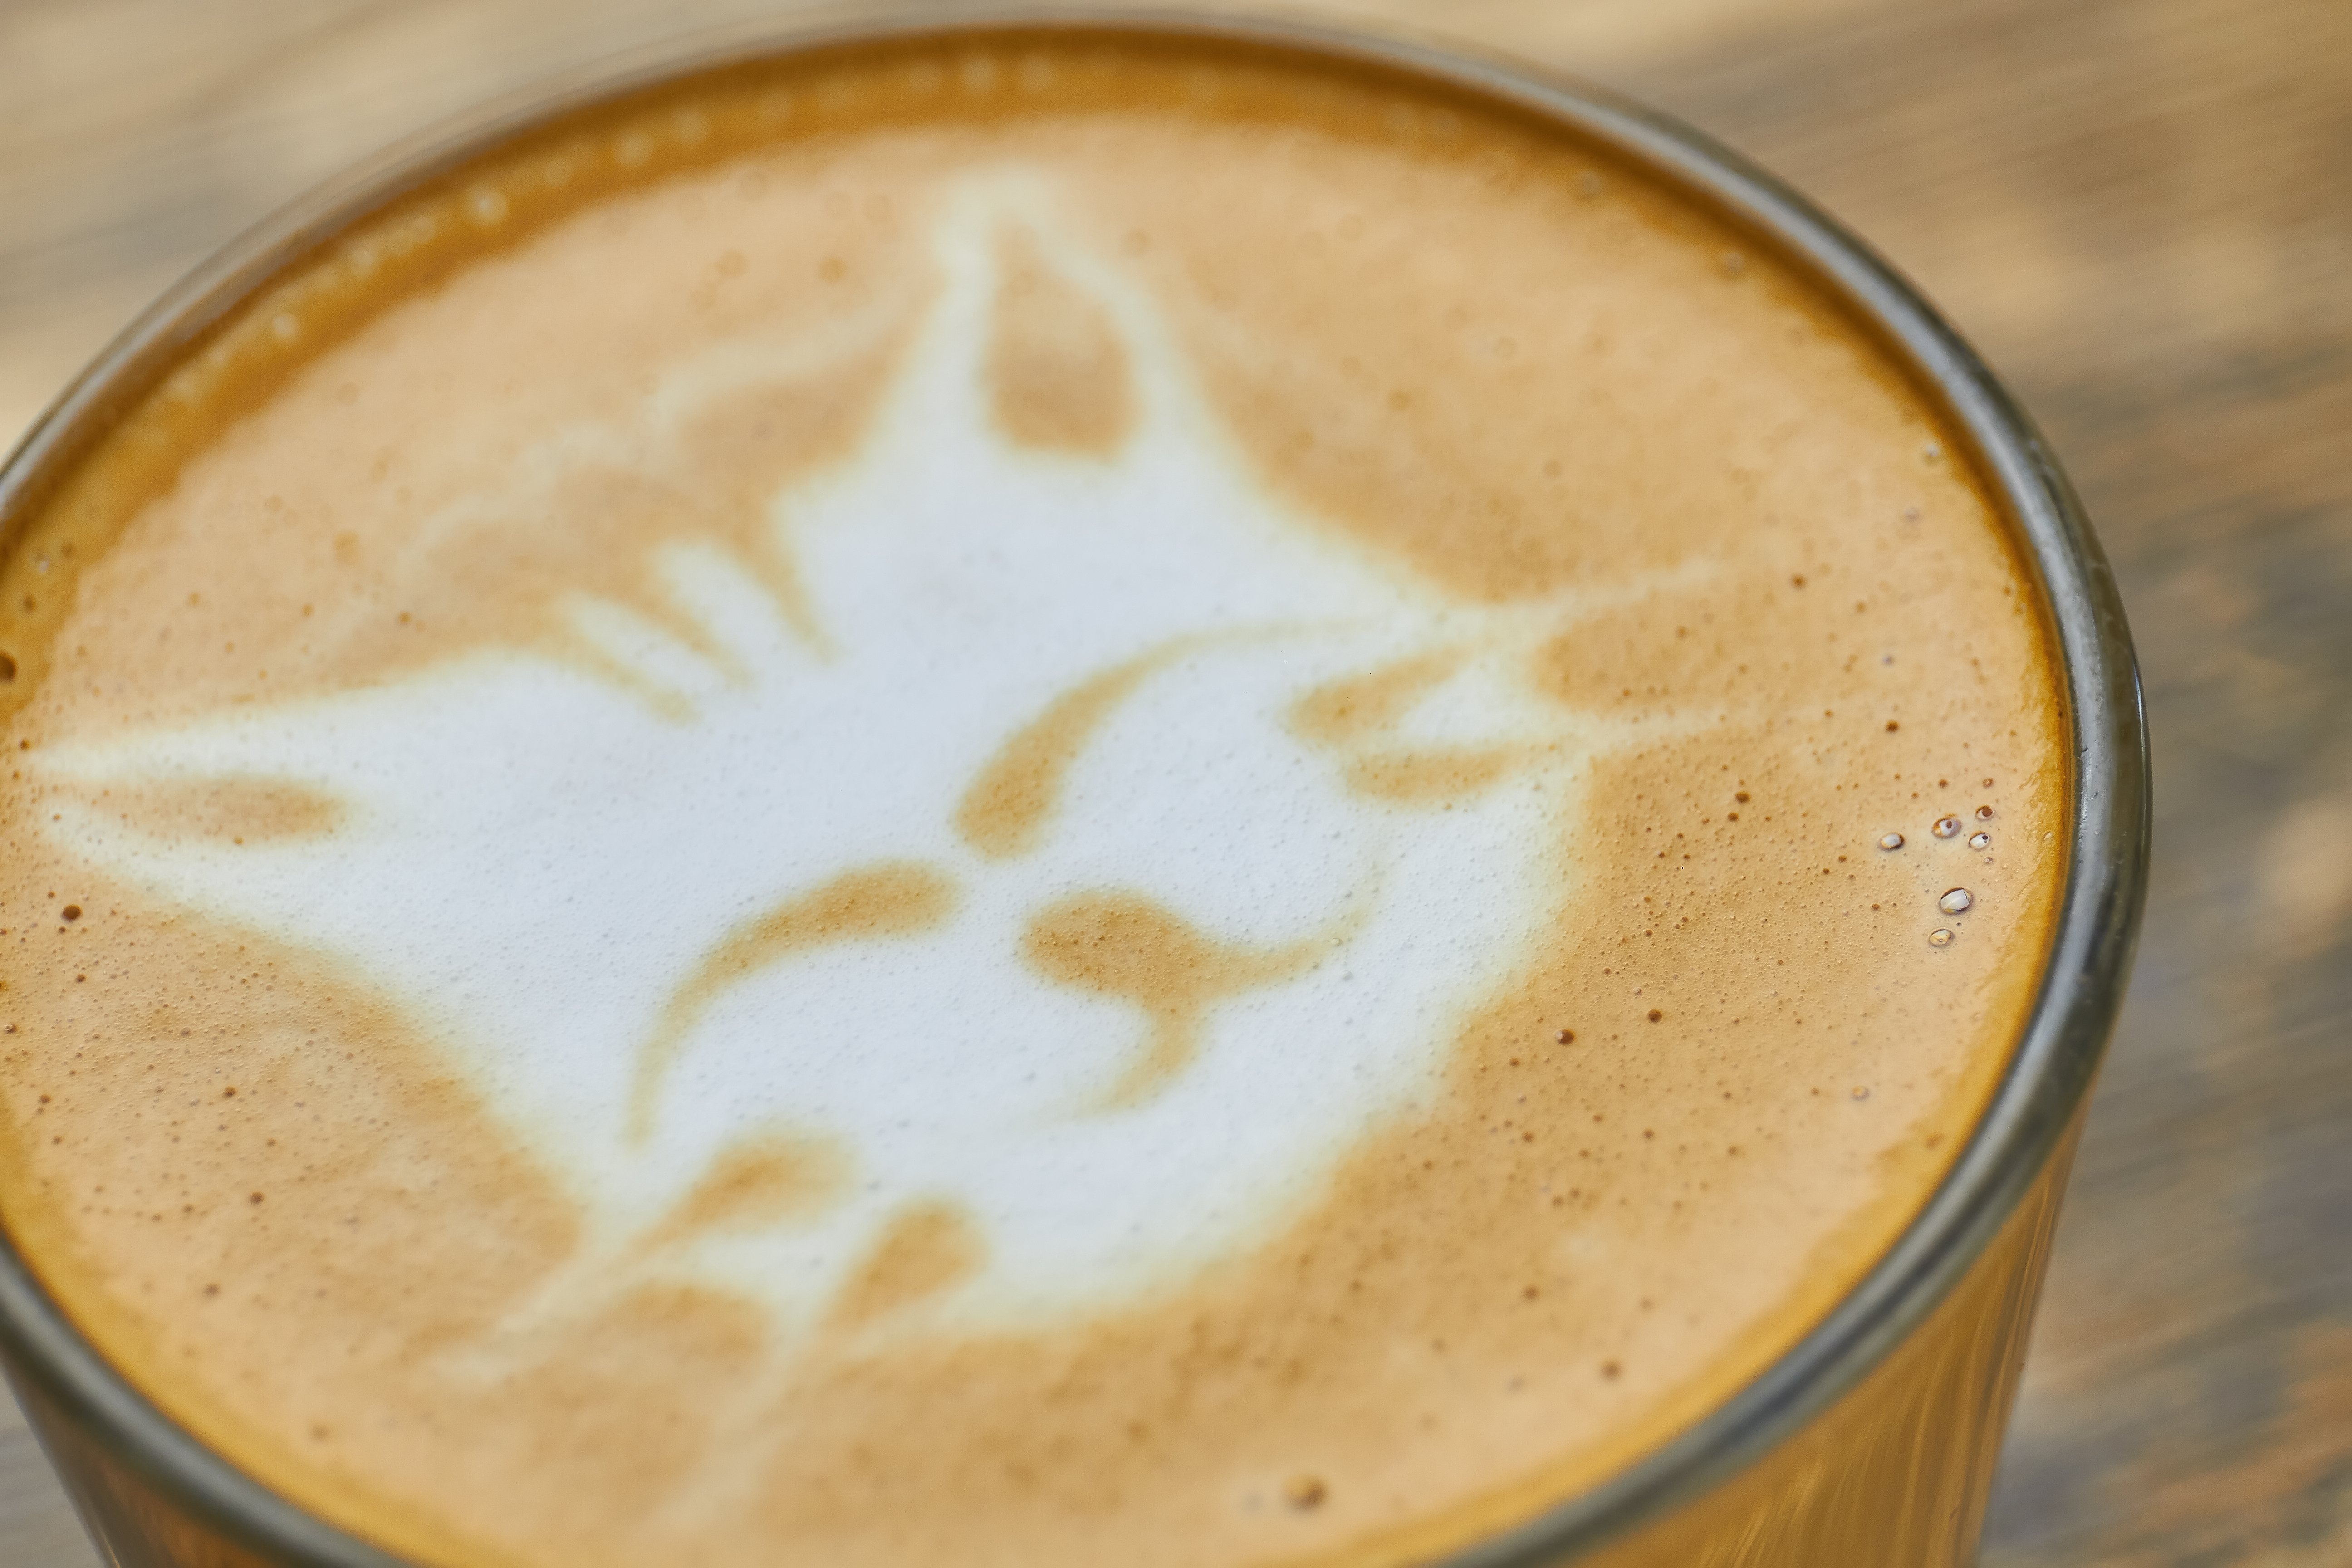 cat cafe coffee - cat face in cappuccino foam